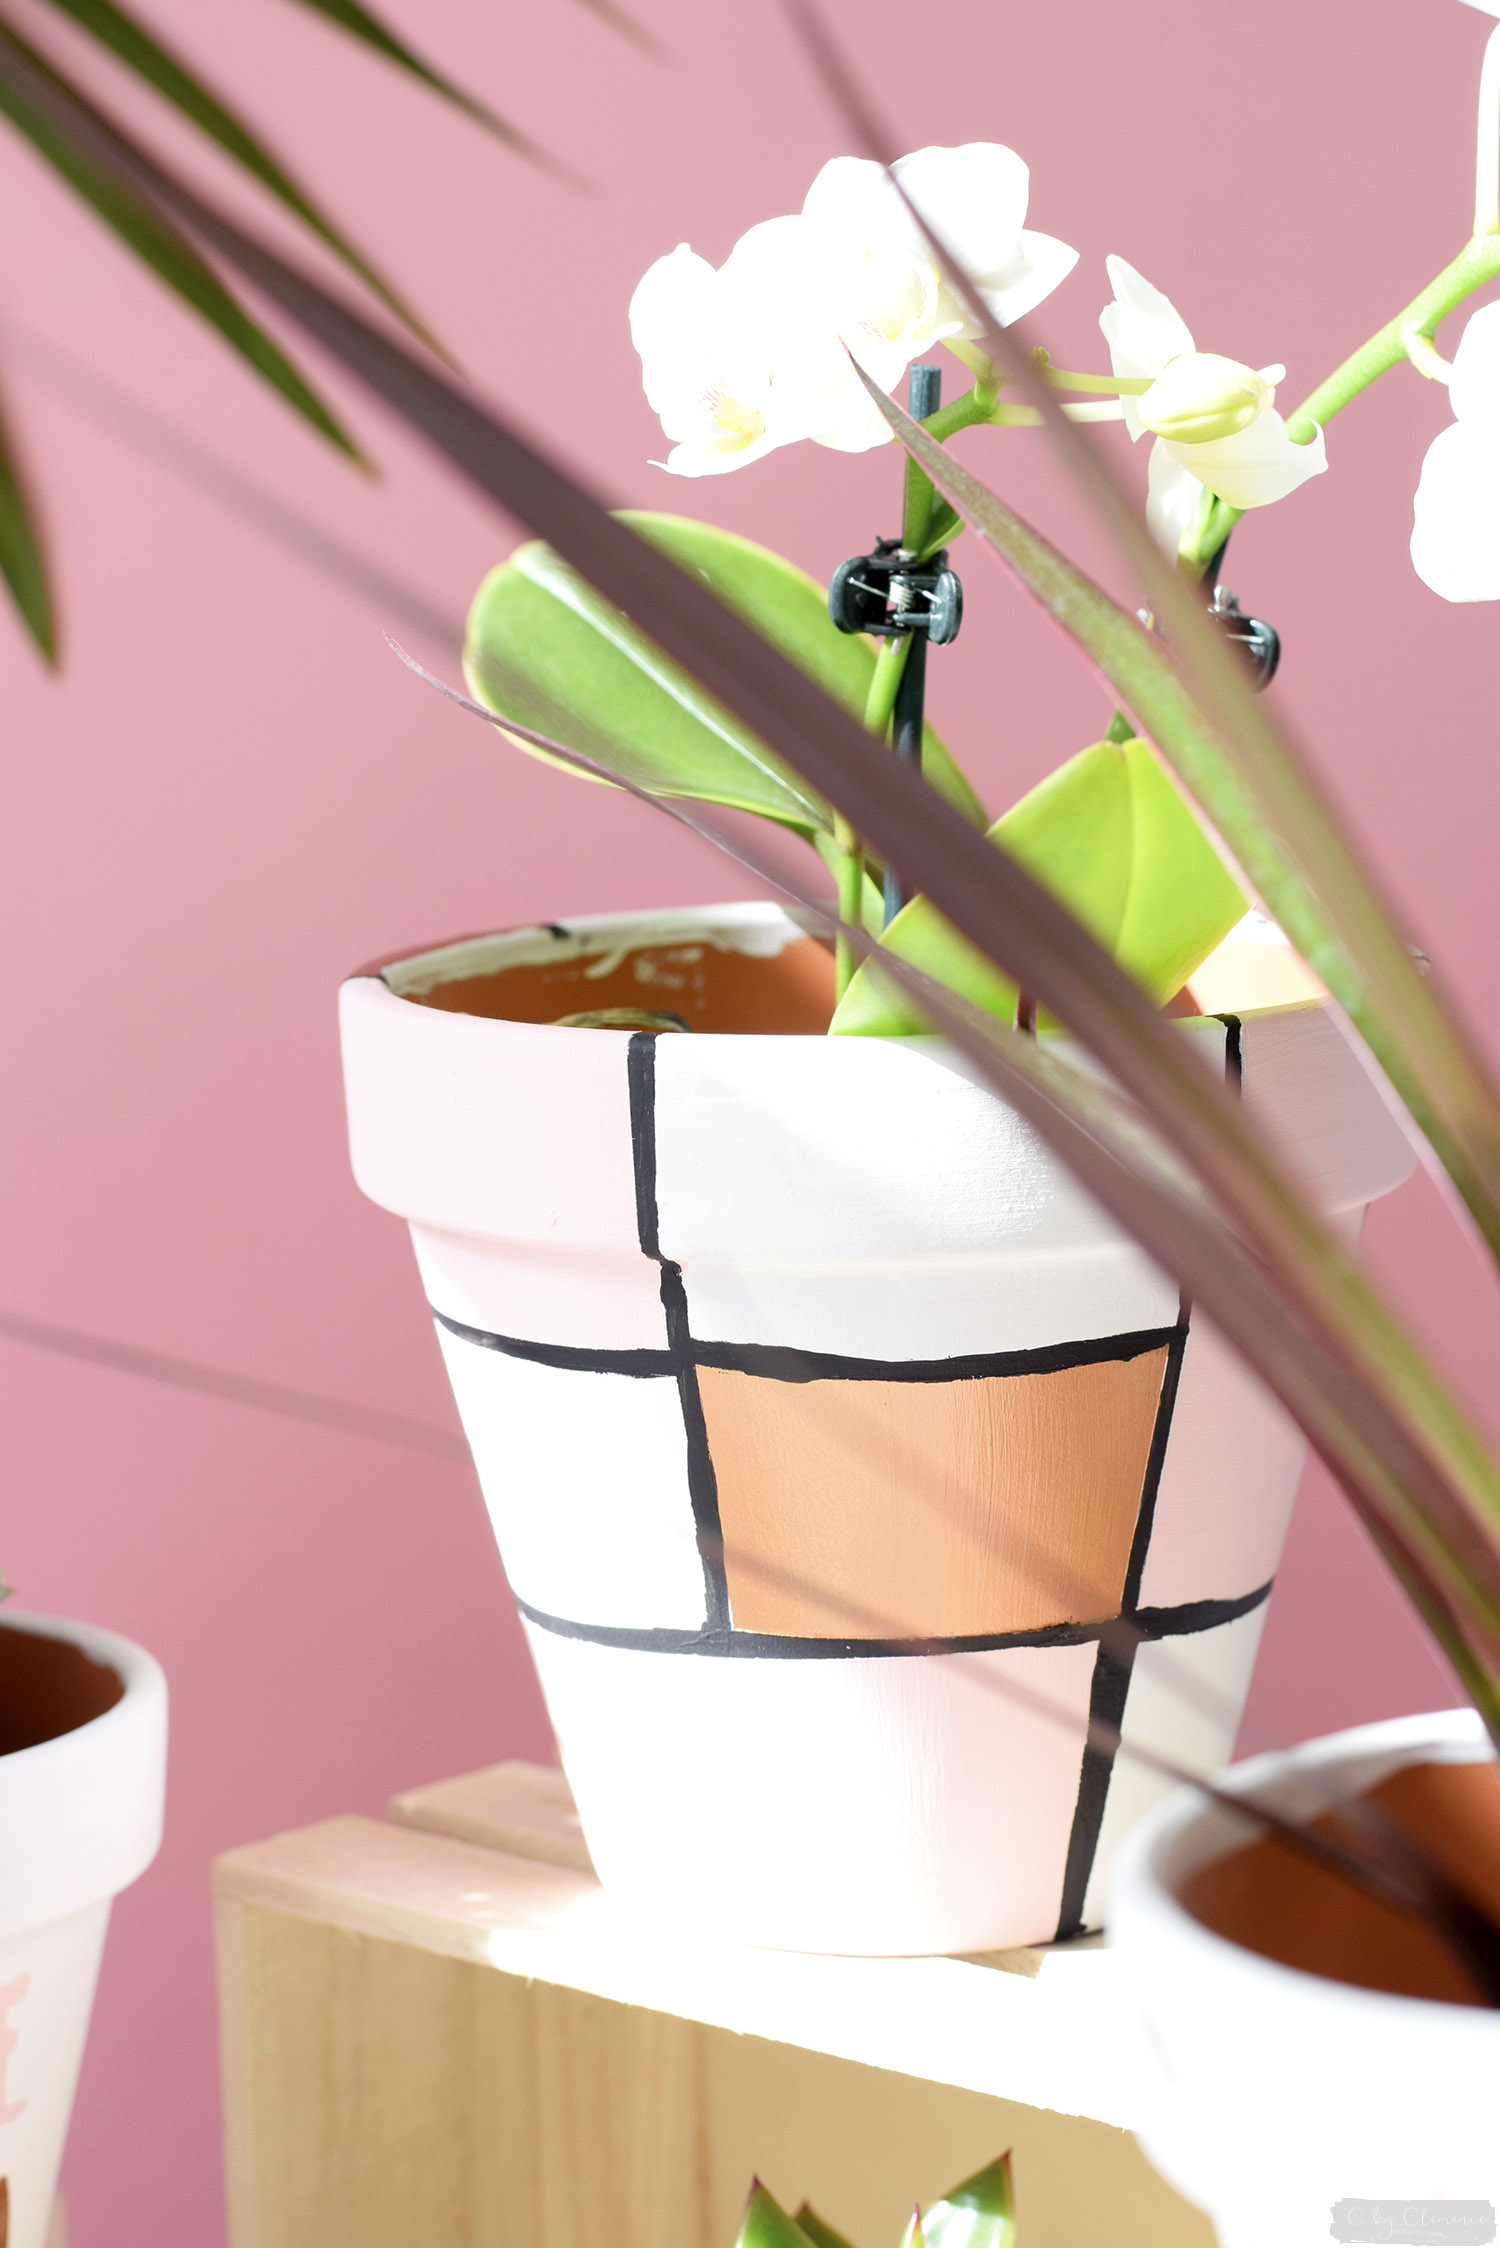 DIY déco : comment customiser des pots de fleurs ? - Magazine Avantages